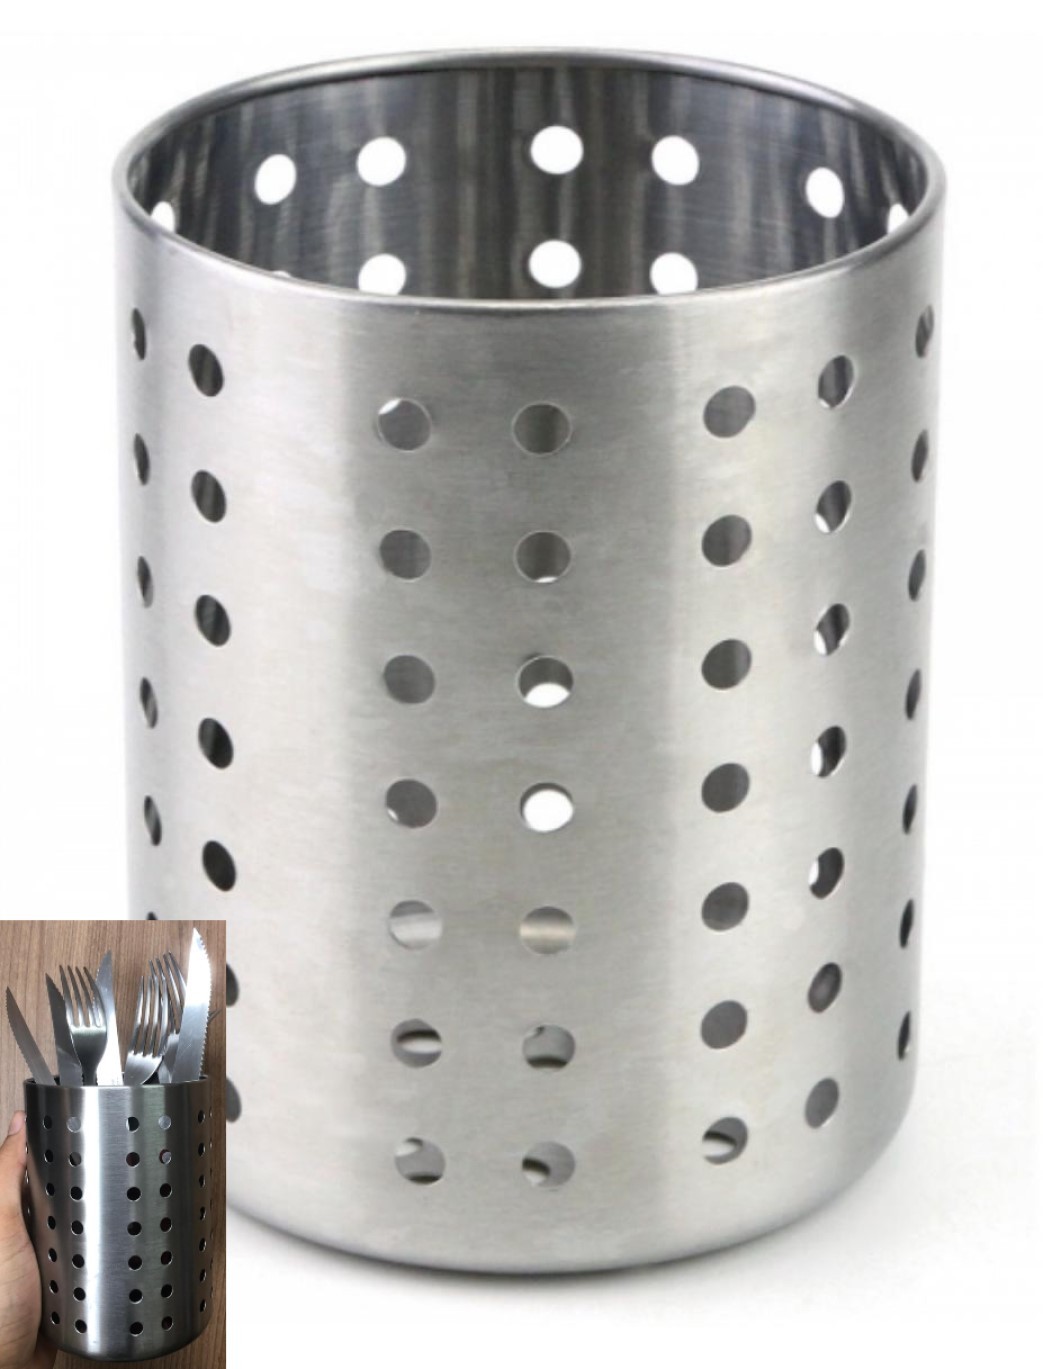 Porta utensílios talher de cozinha vazado aço inox pratico escorredor secador talher pincel organizador 10x12 cm ck4570